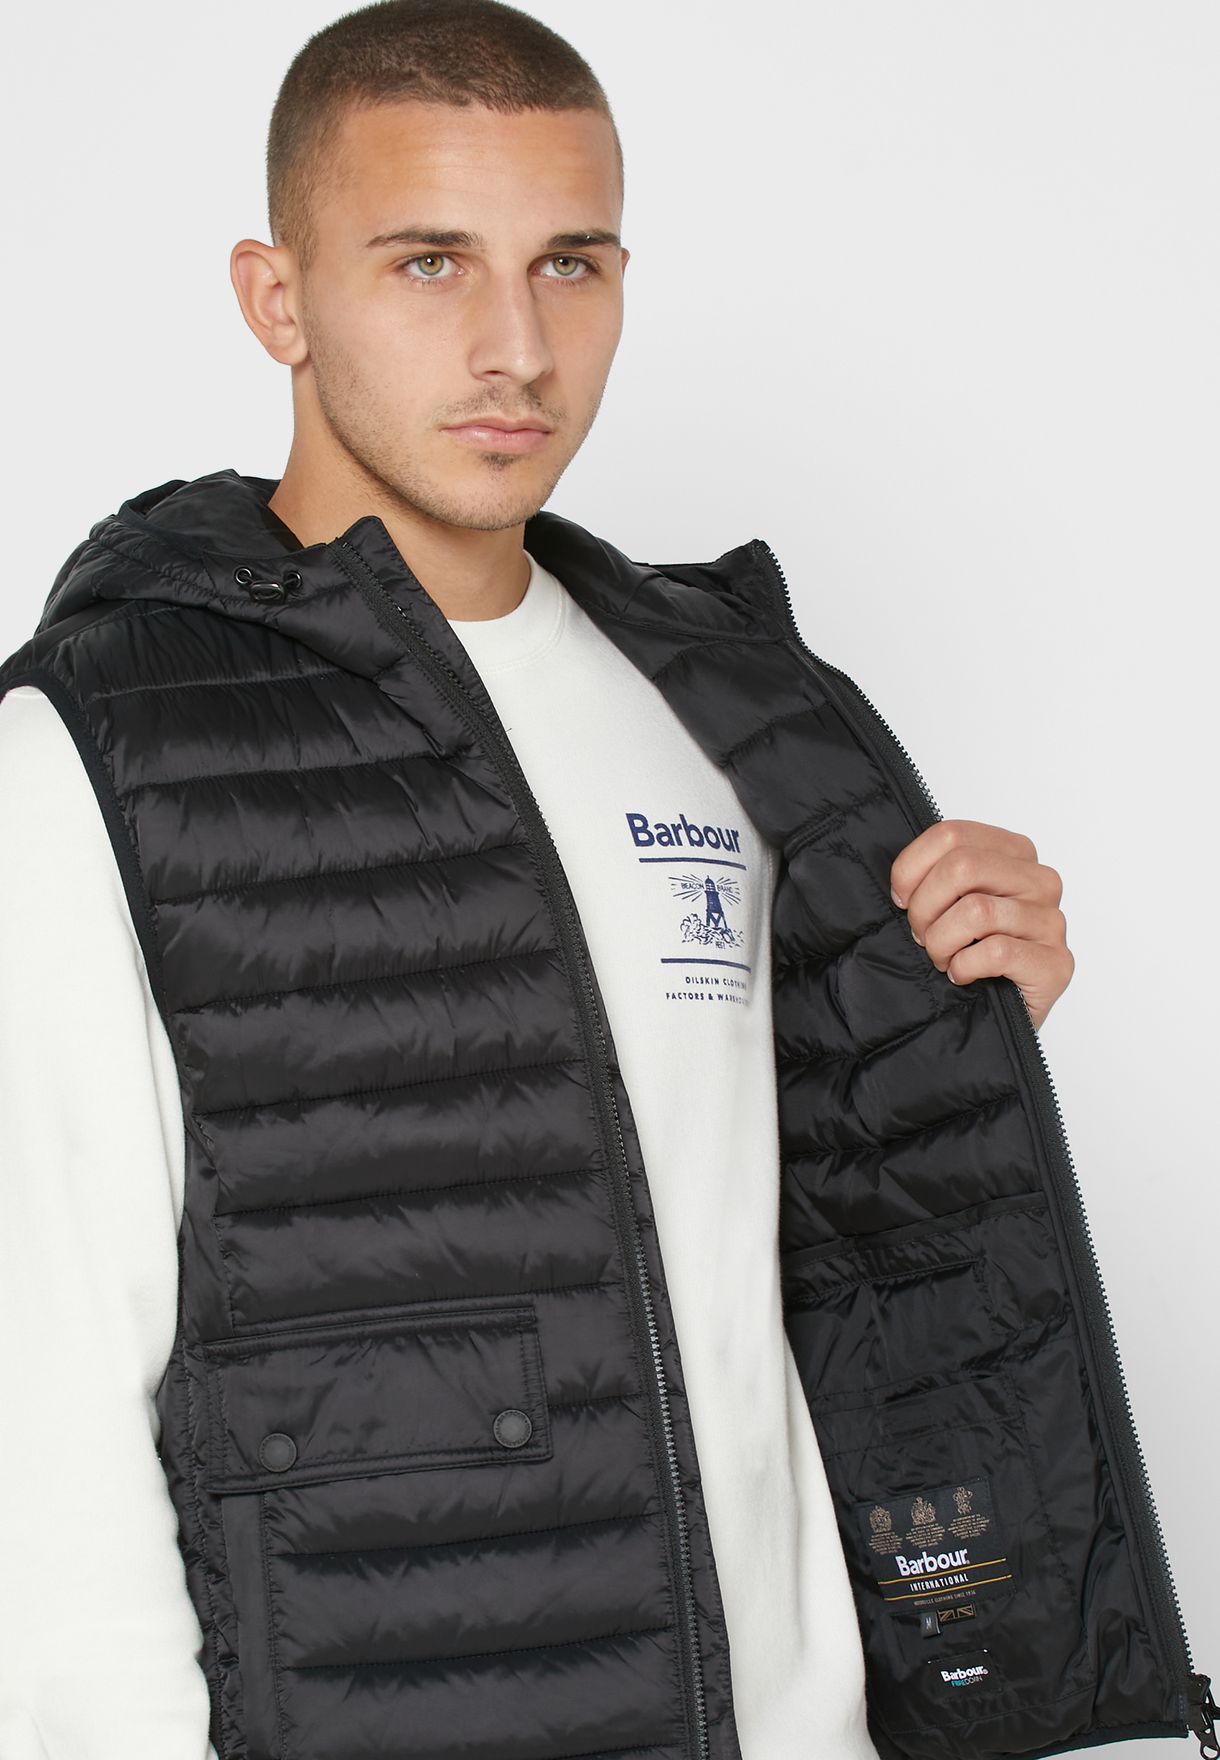 barbour international vests